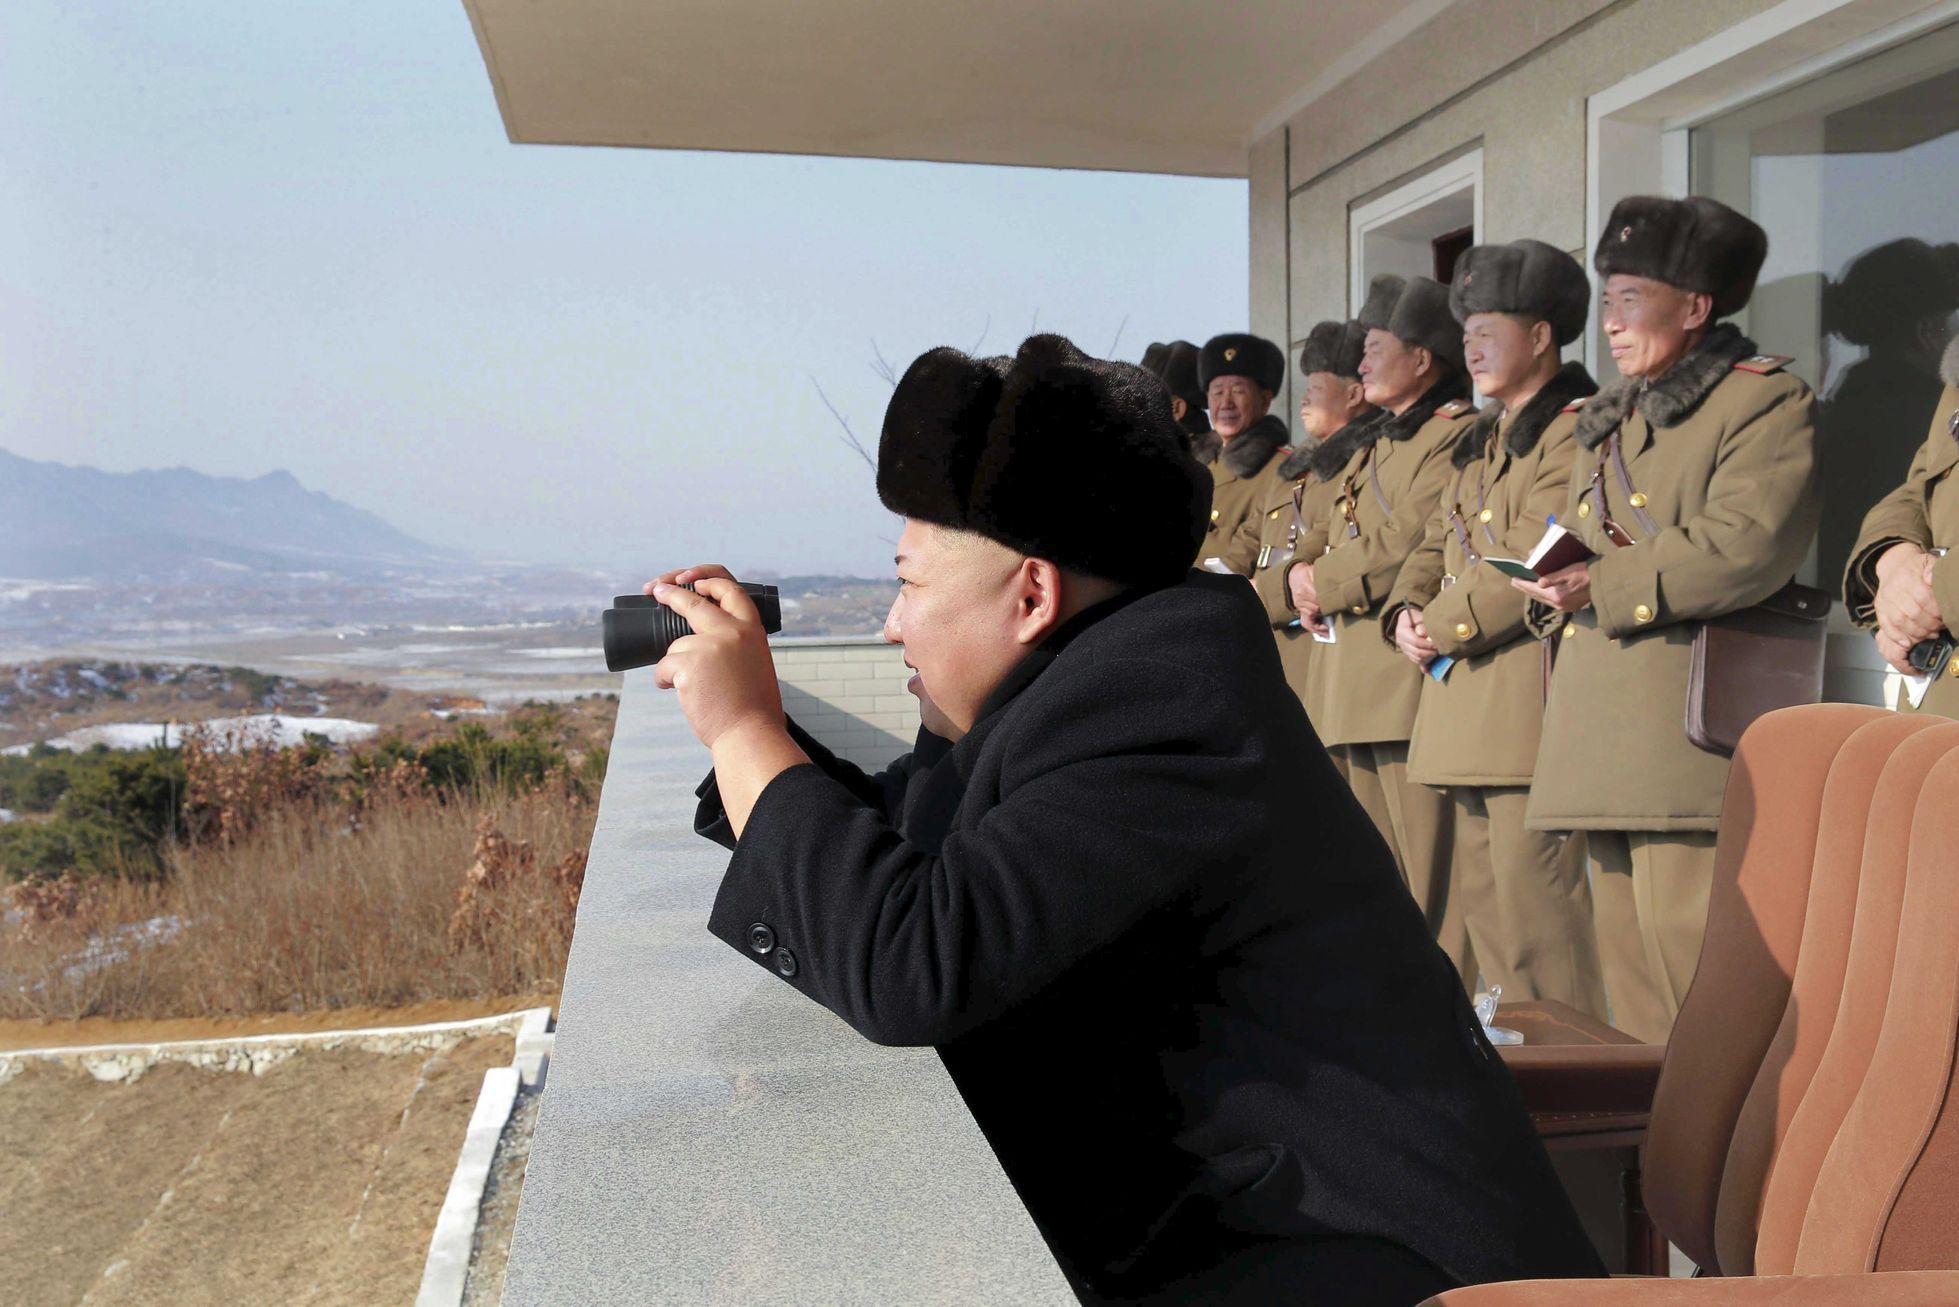 Kim Čong-un na inspekci armády. Snímek byl podle agentury KCNA pořízen 24.prosince.